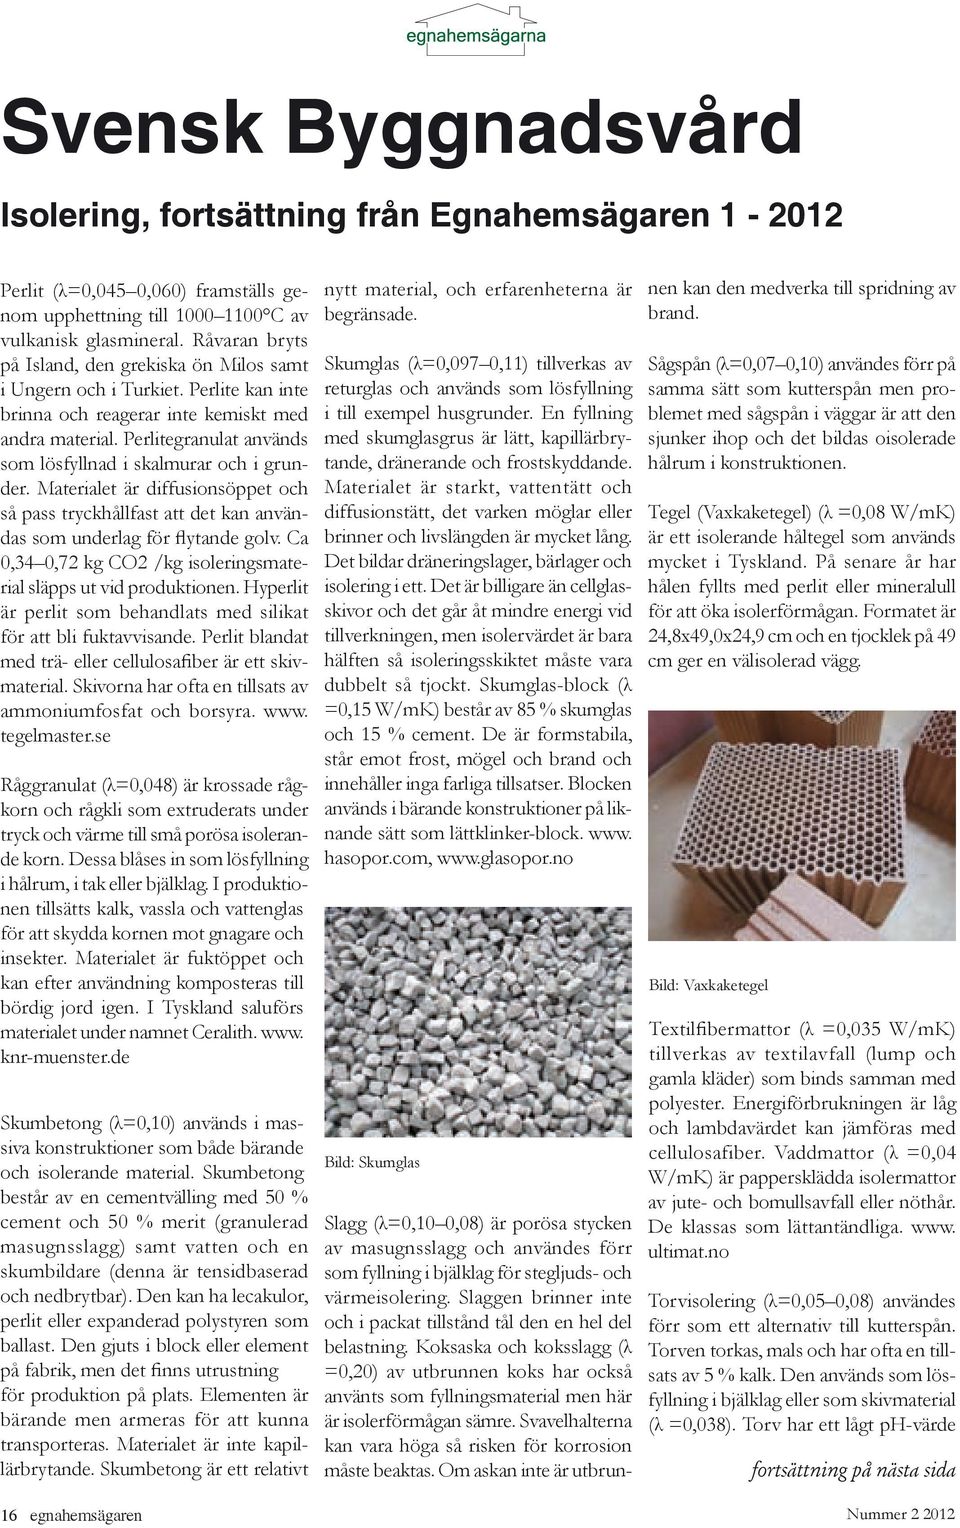 Perlitegranulat används som lösfyllnad i skalmurar och i grunder. Materialet är diffusionsöppet och så pass tryckhållfast att det kan användas som underlag för flytande golv.